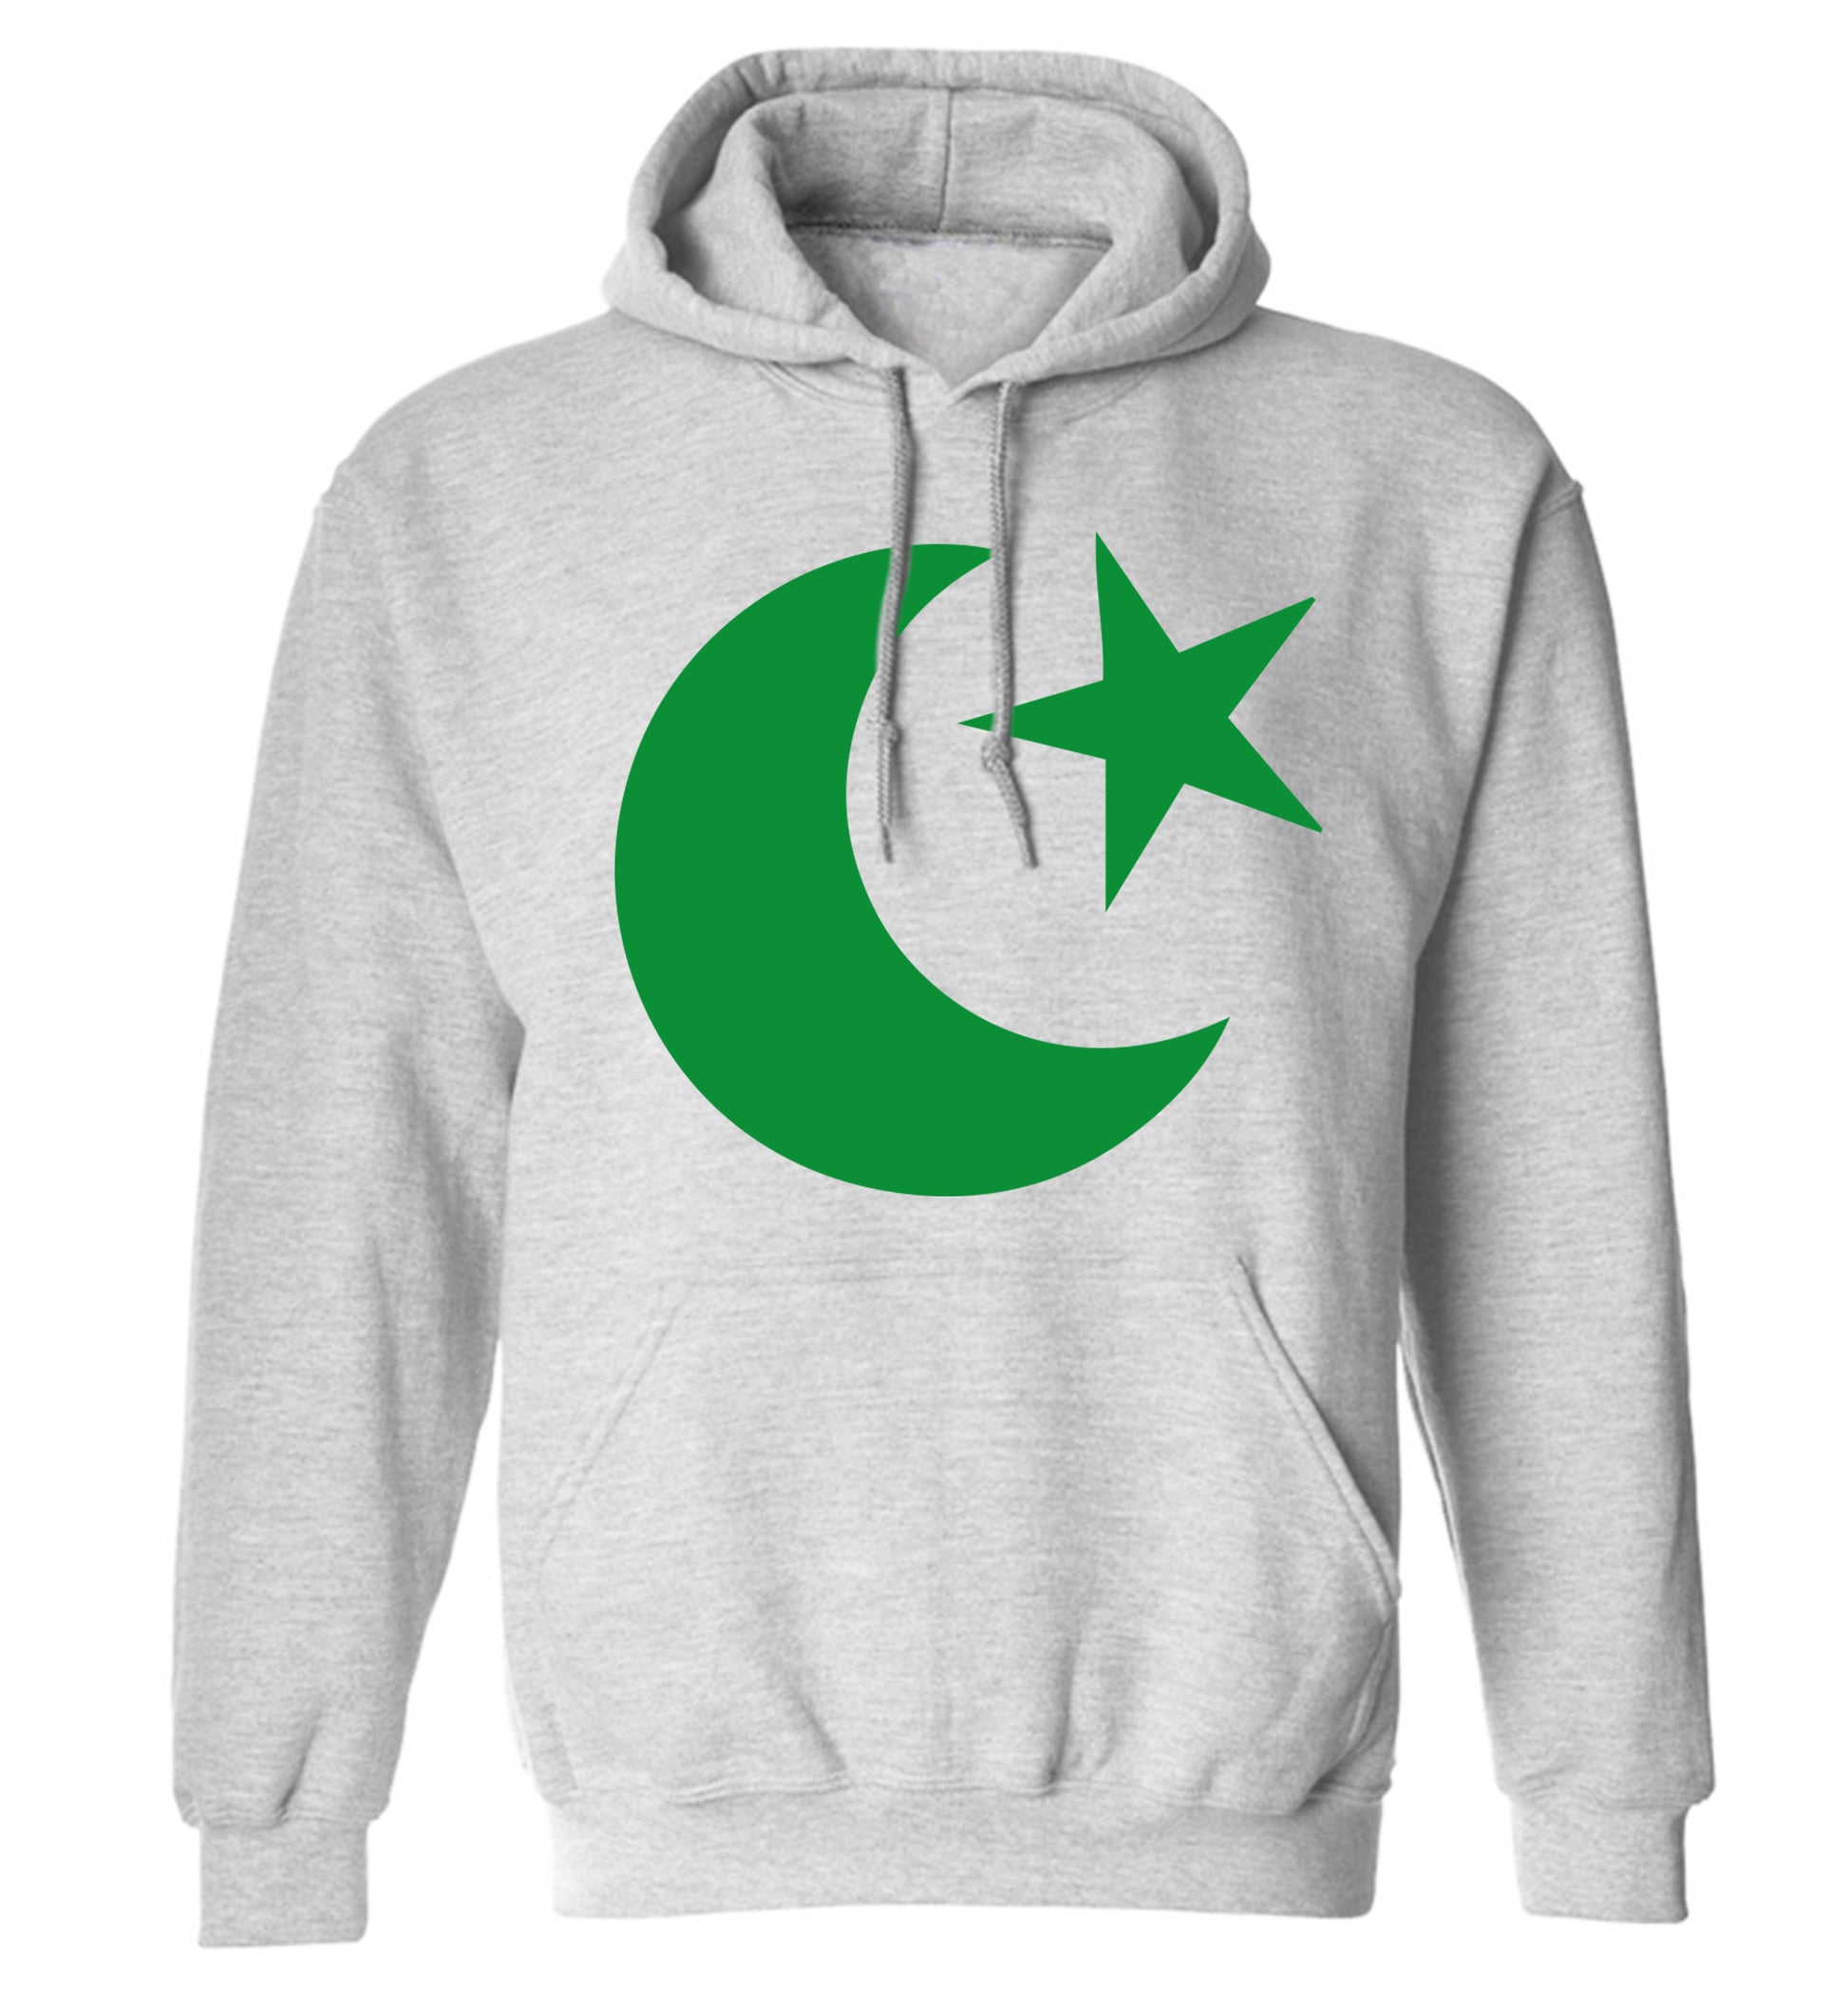 Eid symbol adults unisex grey hoodie 2XL